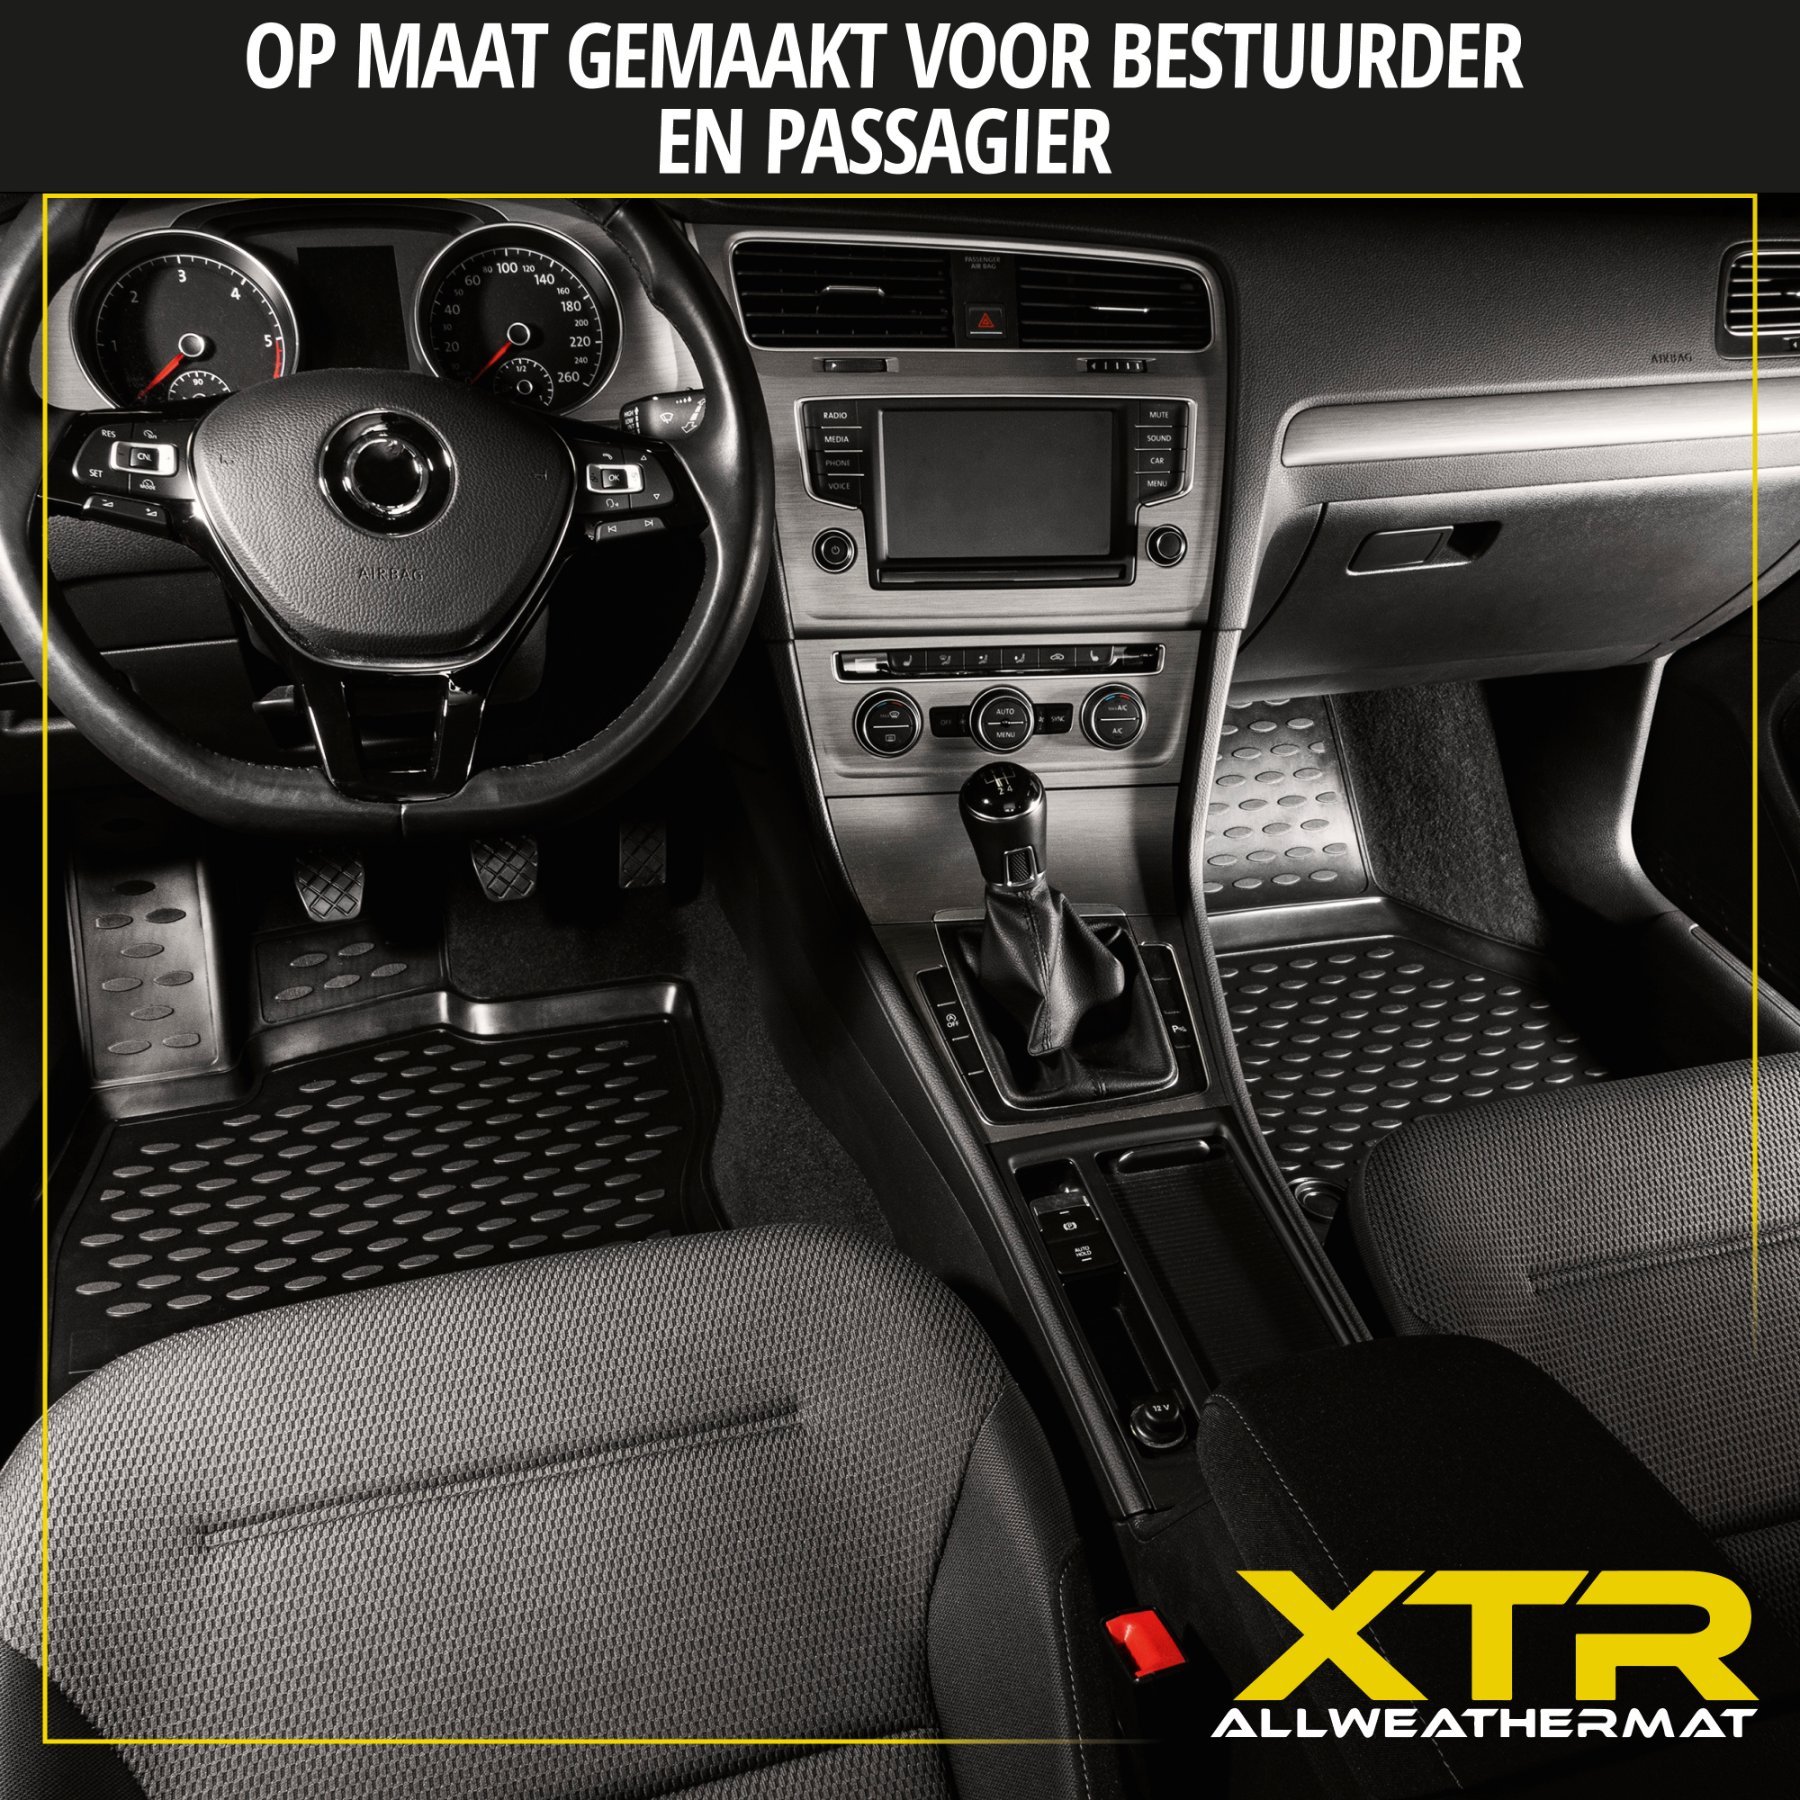 Rubberen Voetmatten XTR geschikt voor Opel Astra J 09/2009 - 10/2015, Astra J Caravan 10/2010 - 10/2015,